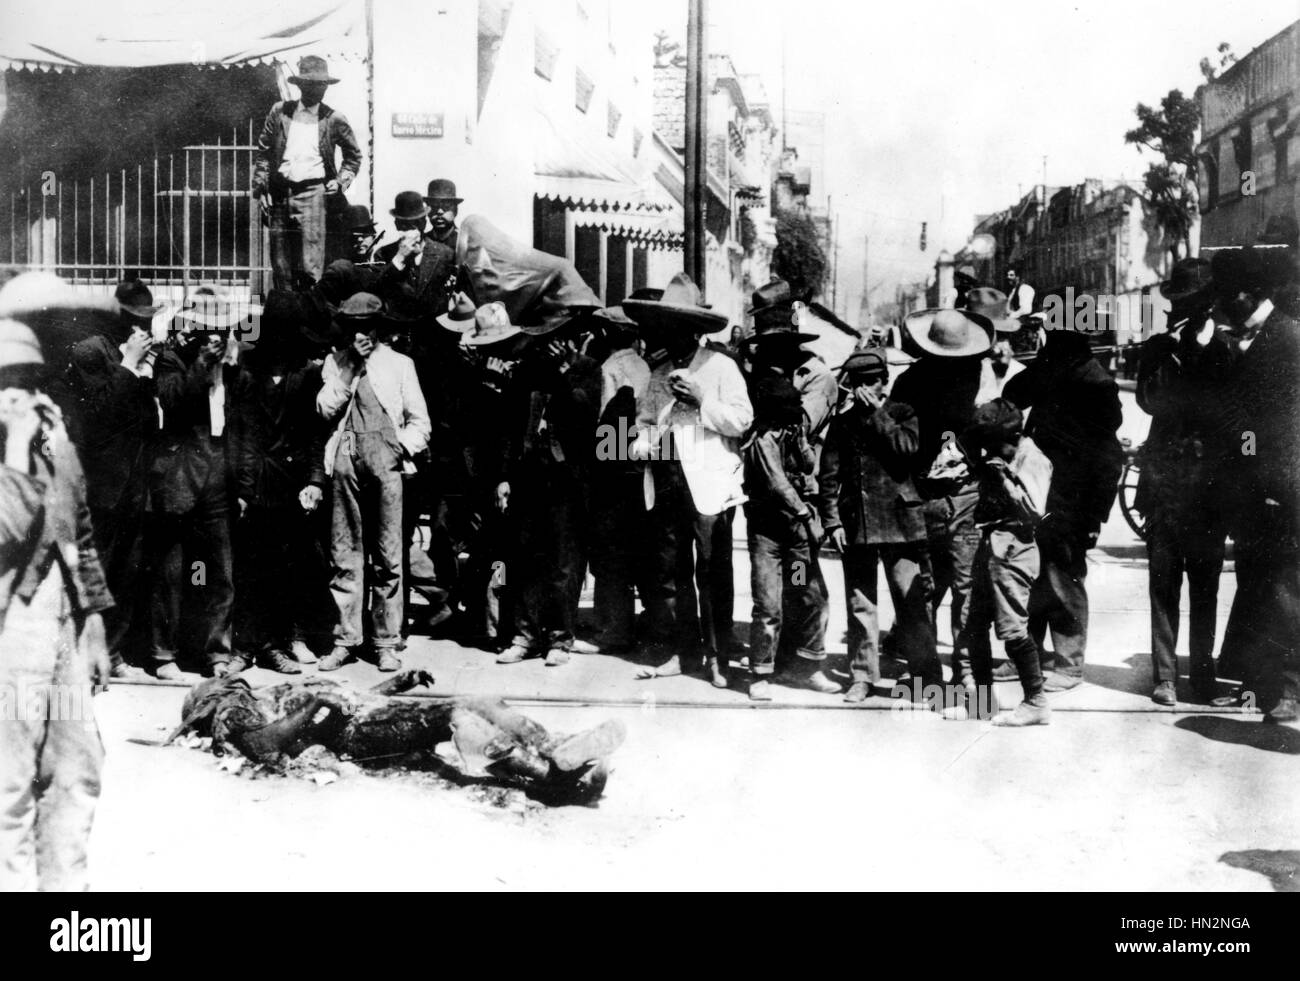 Révolution mexicaine. Un cadavre, la moitié brûlé, qui a été laissé dans les rues de Mexico pendant plus de huit jours, Mai 1913 Mexique Washington. Bibliothèque du Congrès Banque D'Images